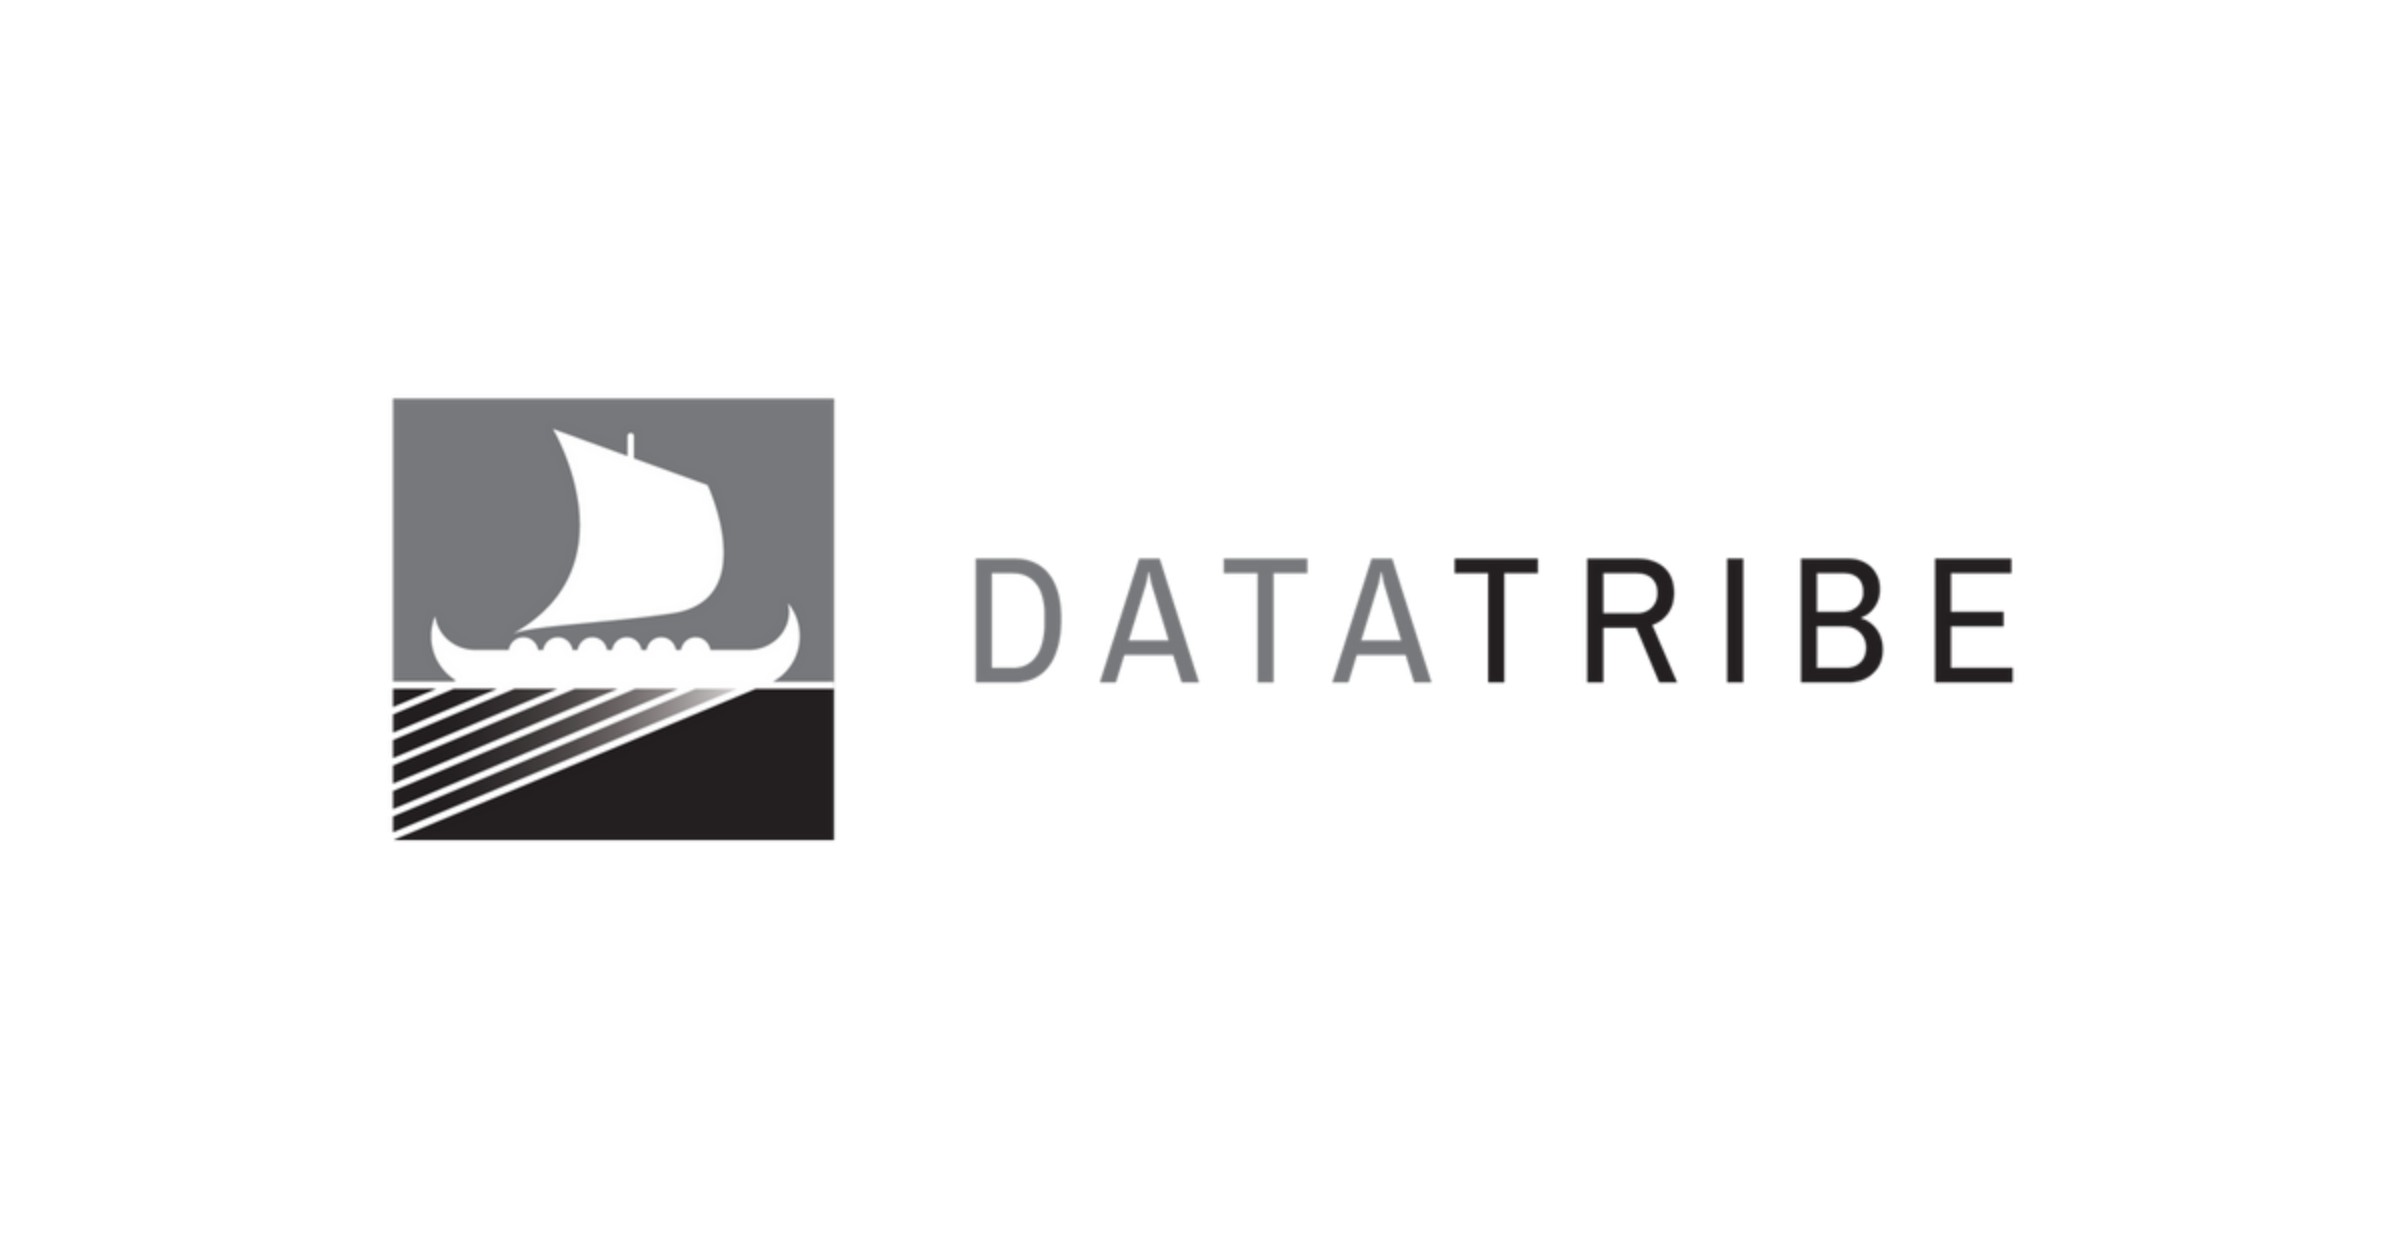 Datatribe logo